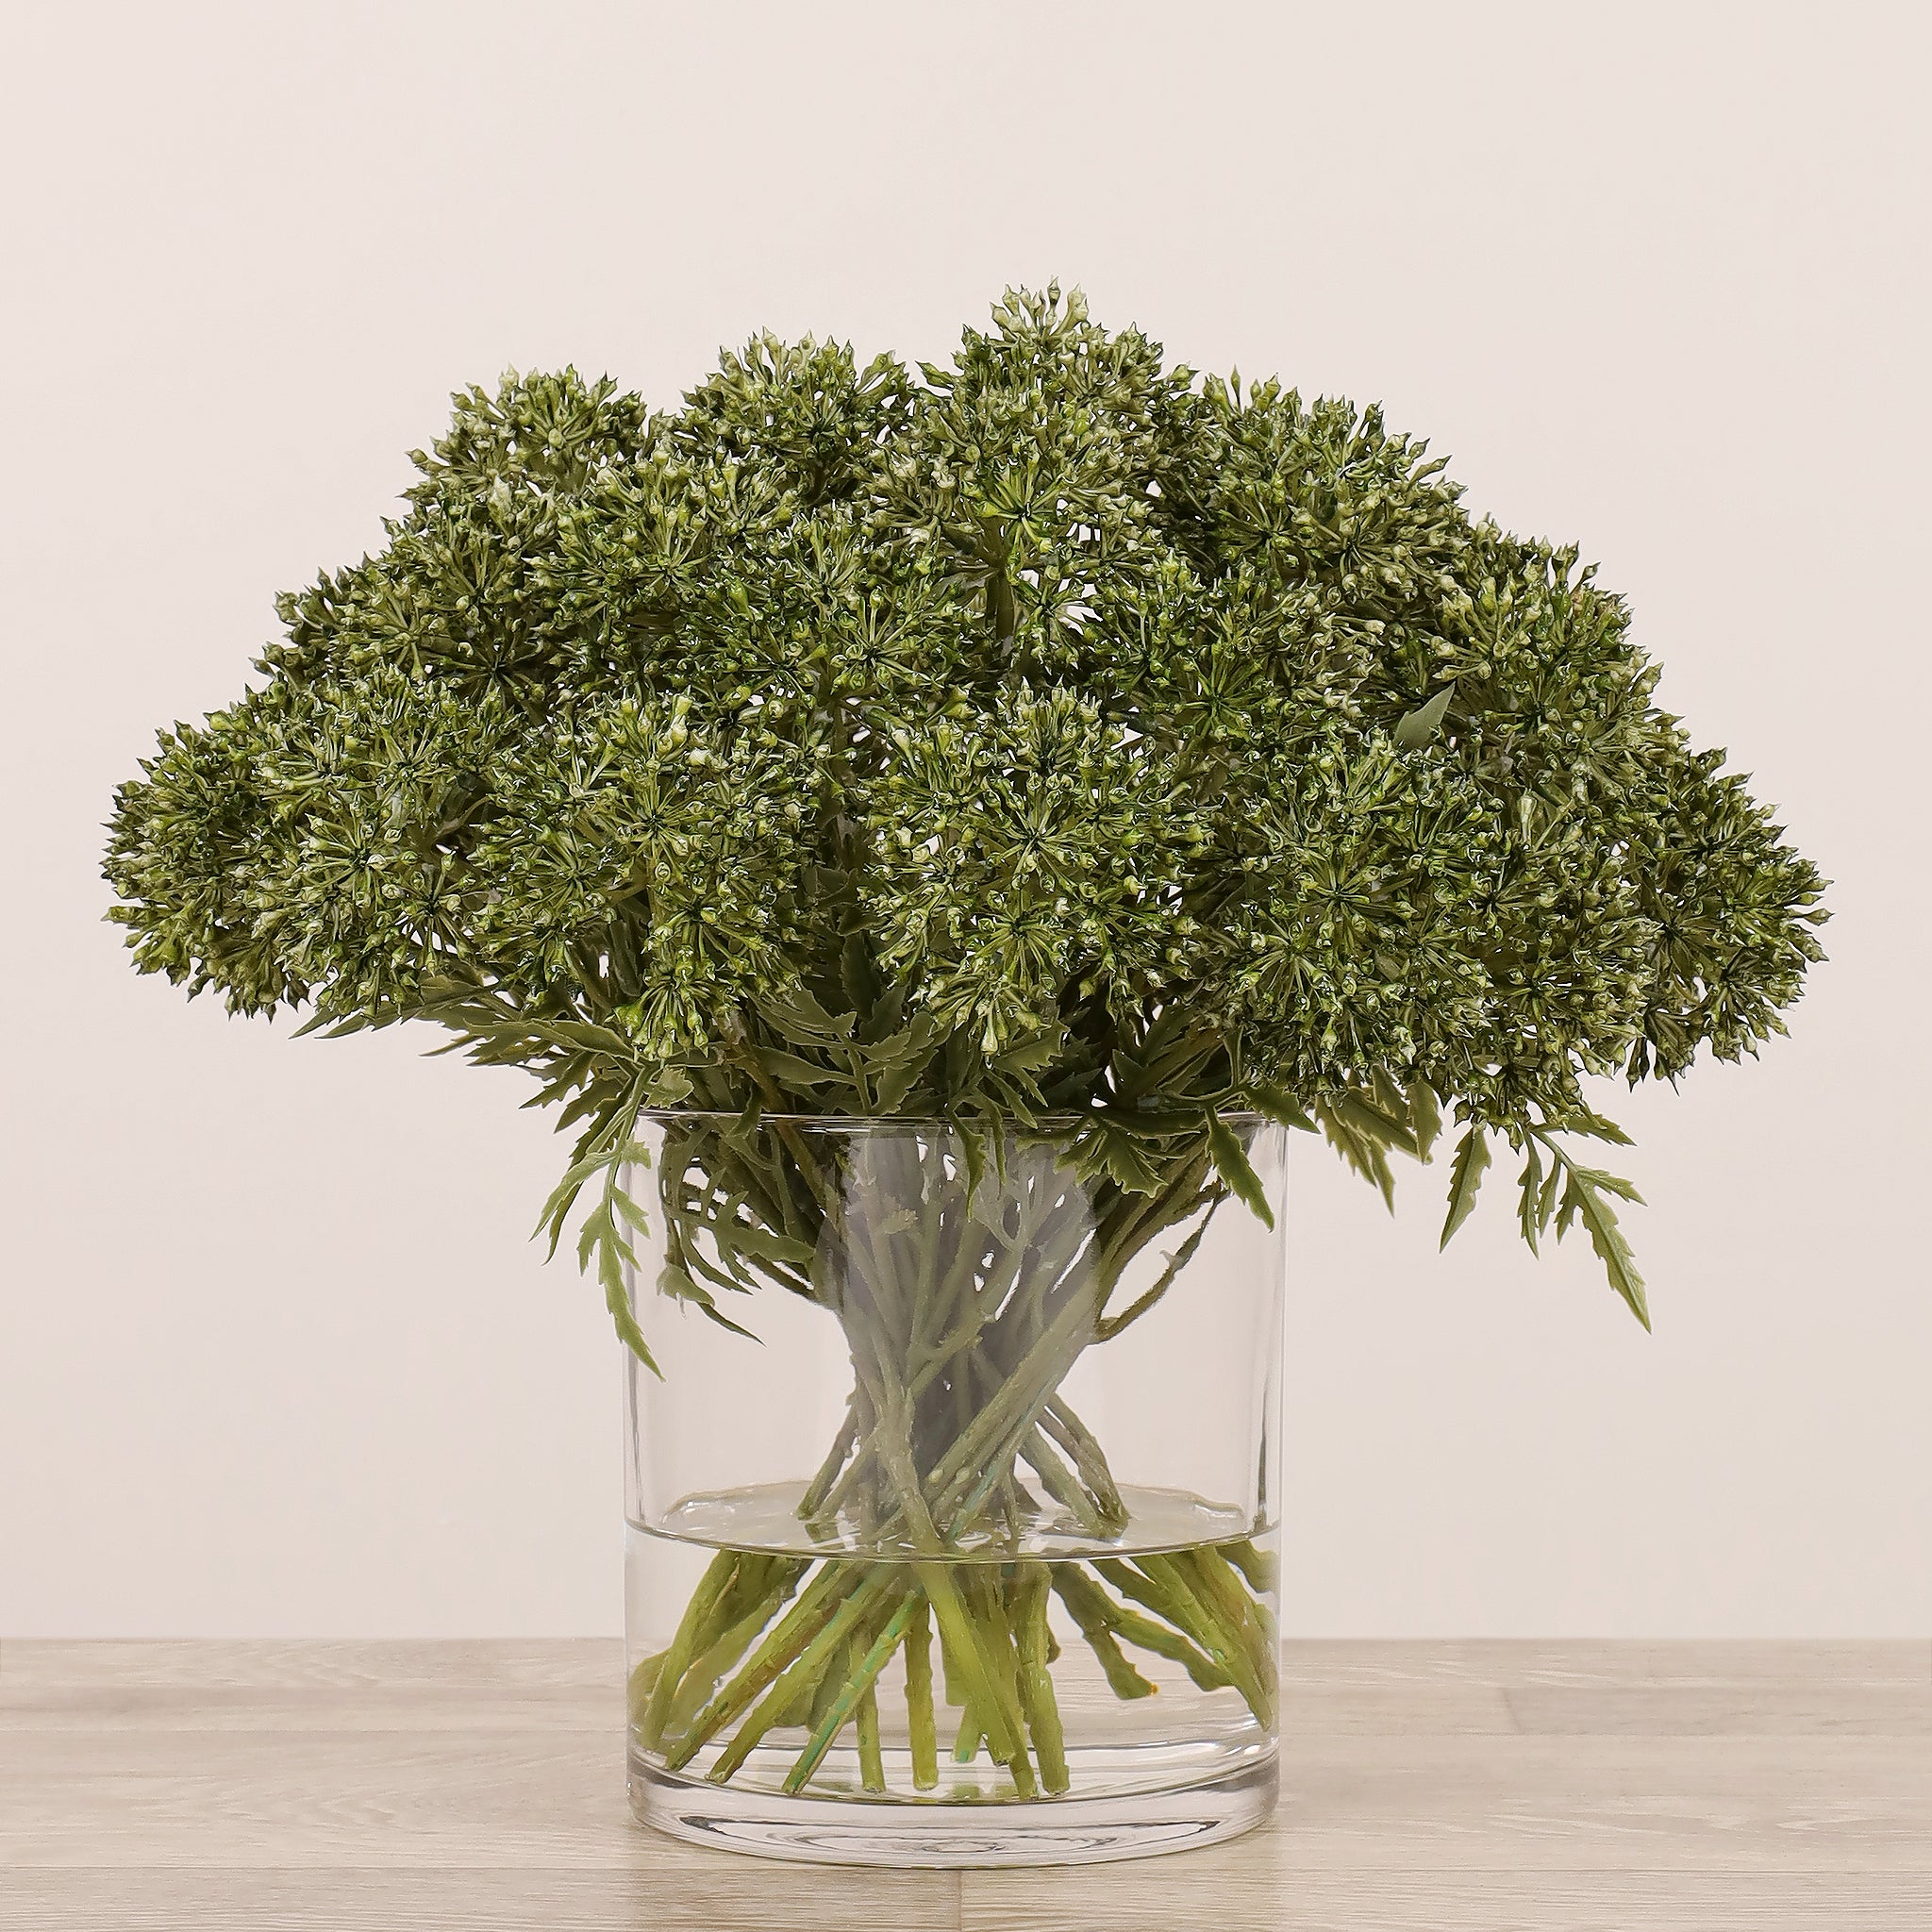 Allium Arrangement in Glass Vase